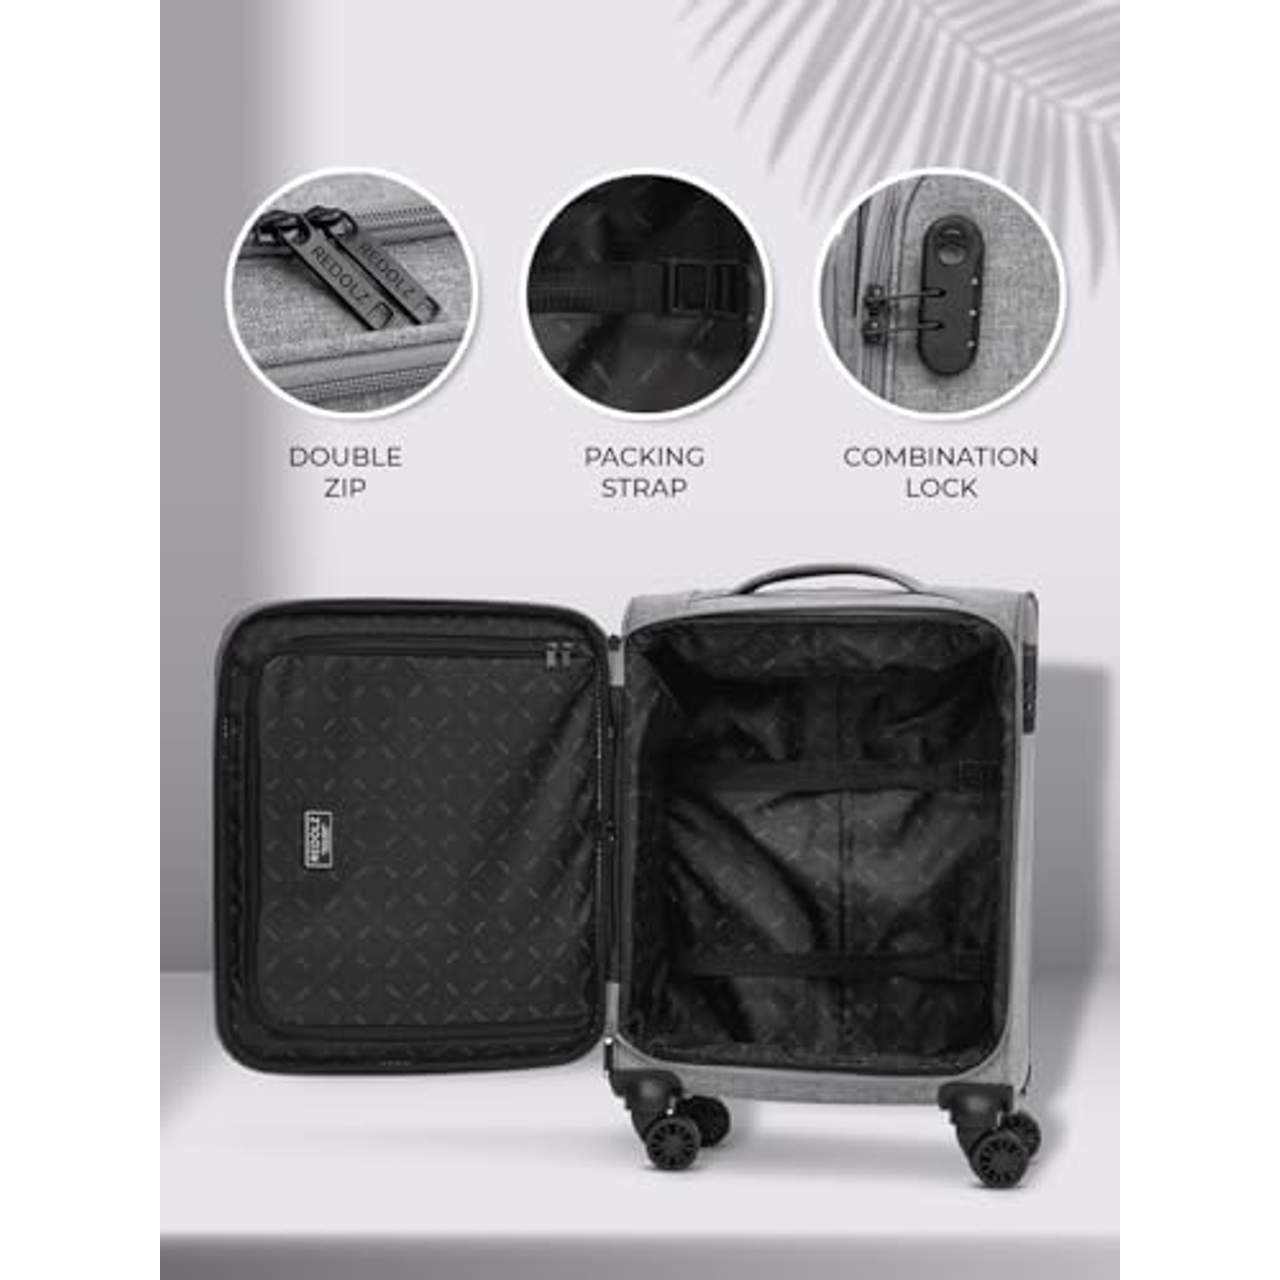 REDOLZ Essentials 12 Cabin Weichschalen Kabinen-Koffer